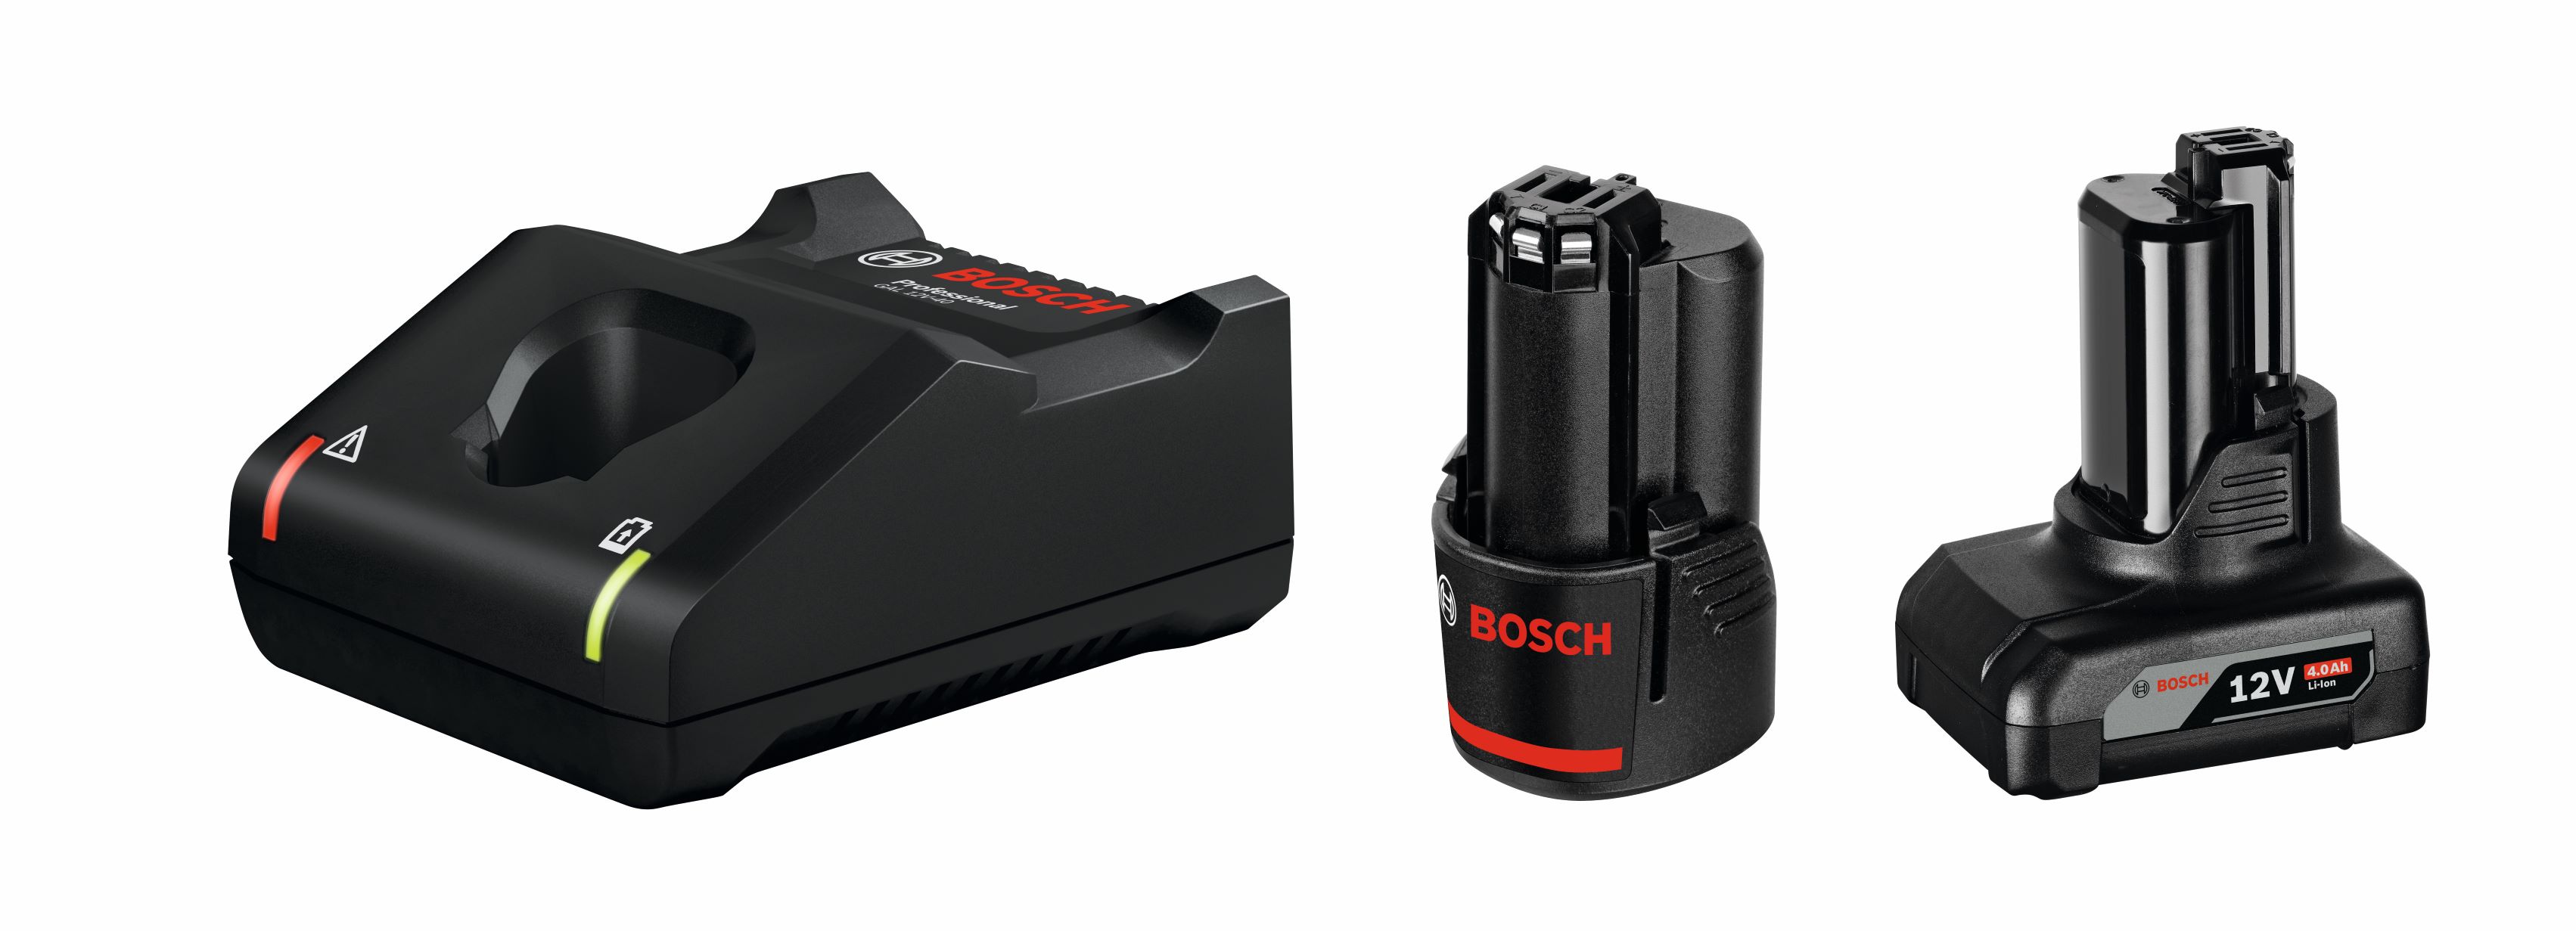 1 x GBA 12V 2.0Ah + 1 x GBA 12V 4.0Ah + GAL 12V-40 Professional Set Bosch